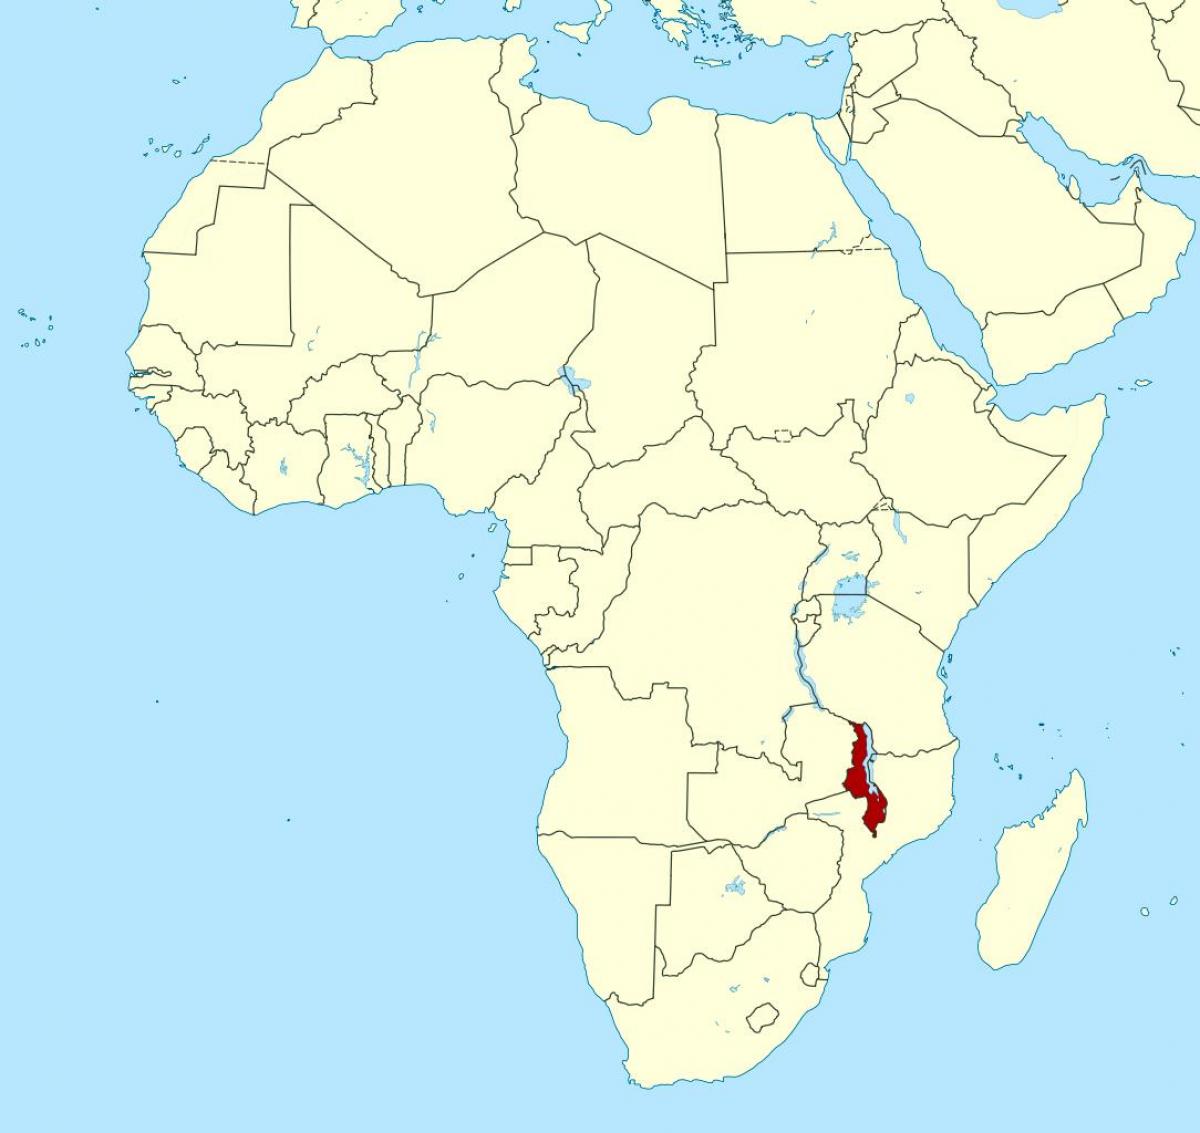 kaart van Malawi locatie kaart afrika